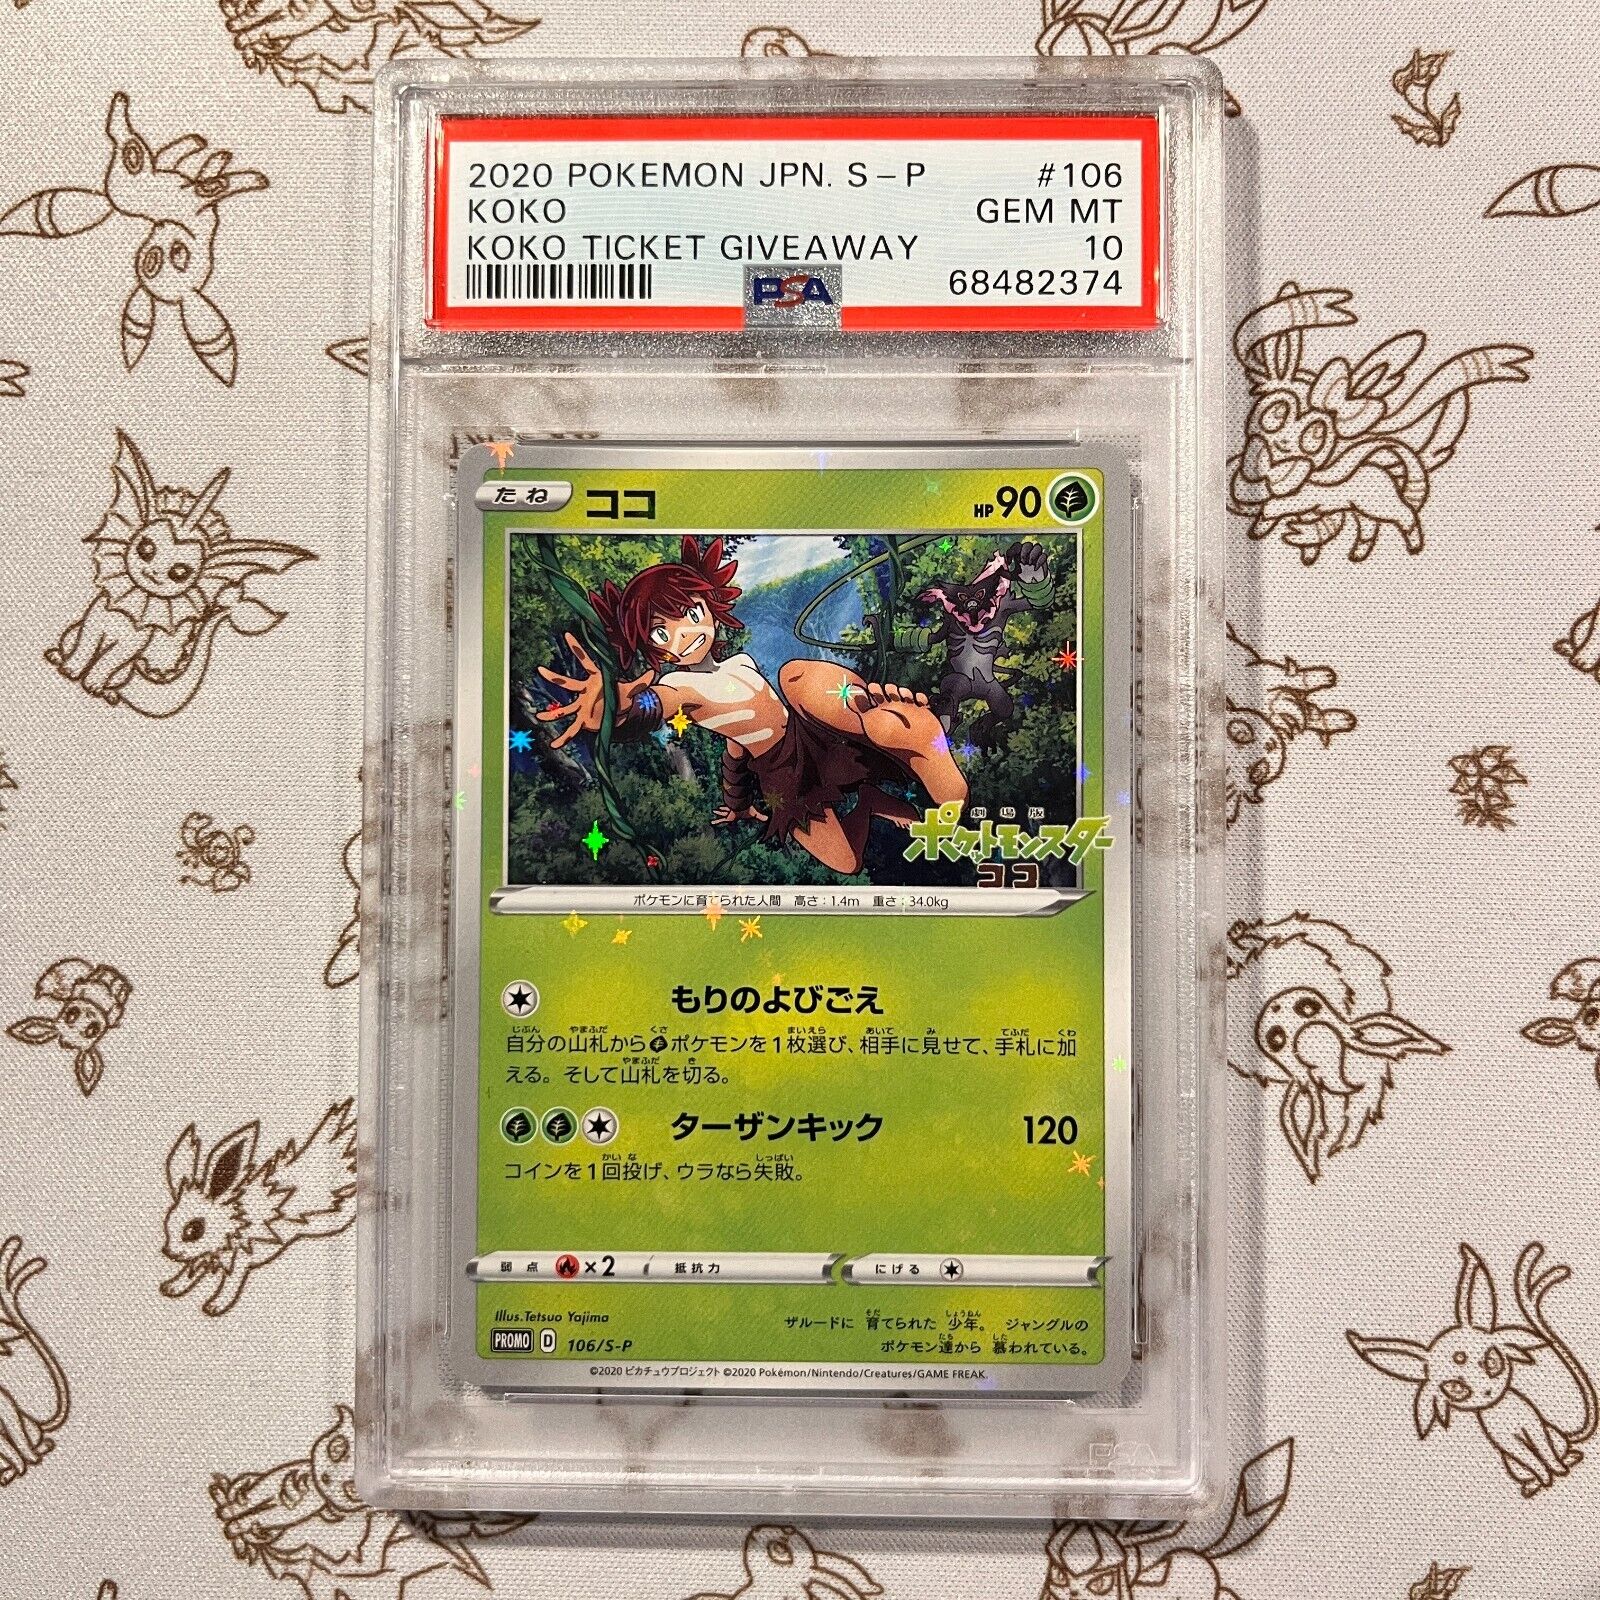 PSA 10 - Ticket Away Koko Pokemon